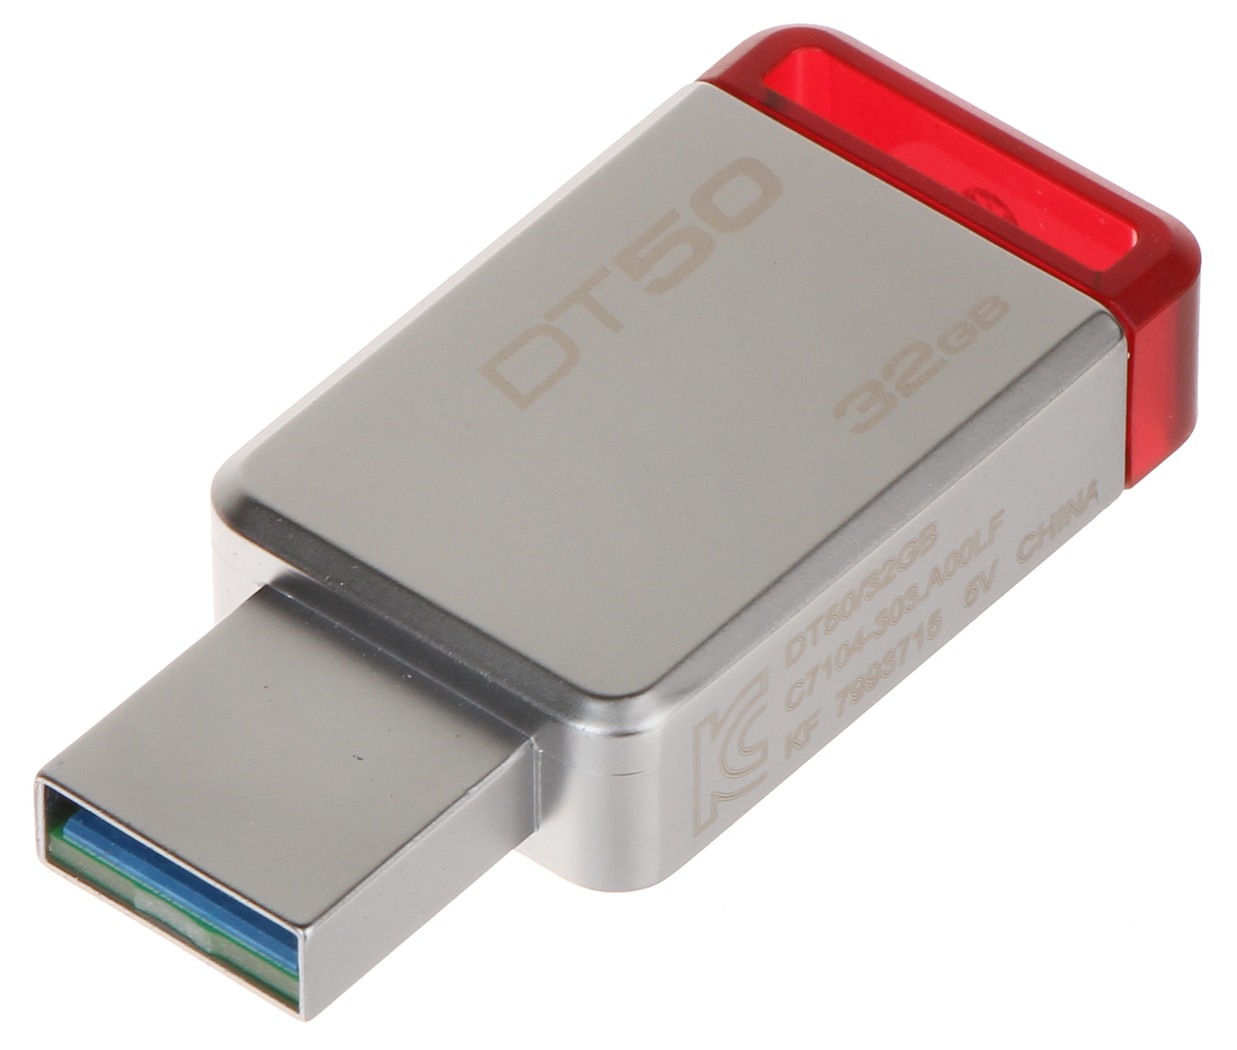 FLASH DRIVE FD-32/DT50-KING 32 GB USB 3.1/3.0 - Flash Drives